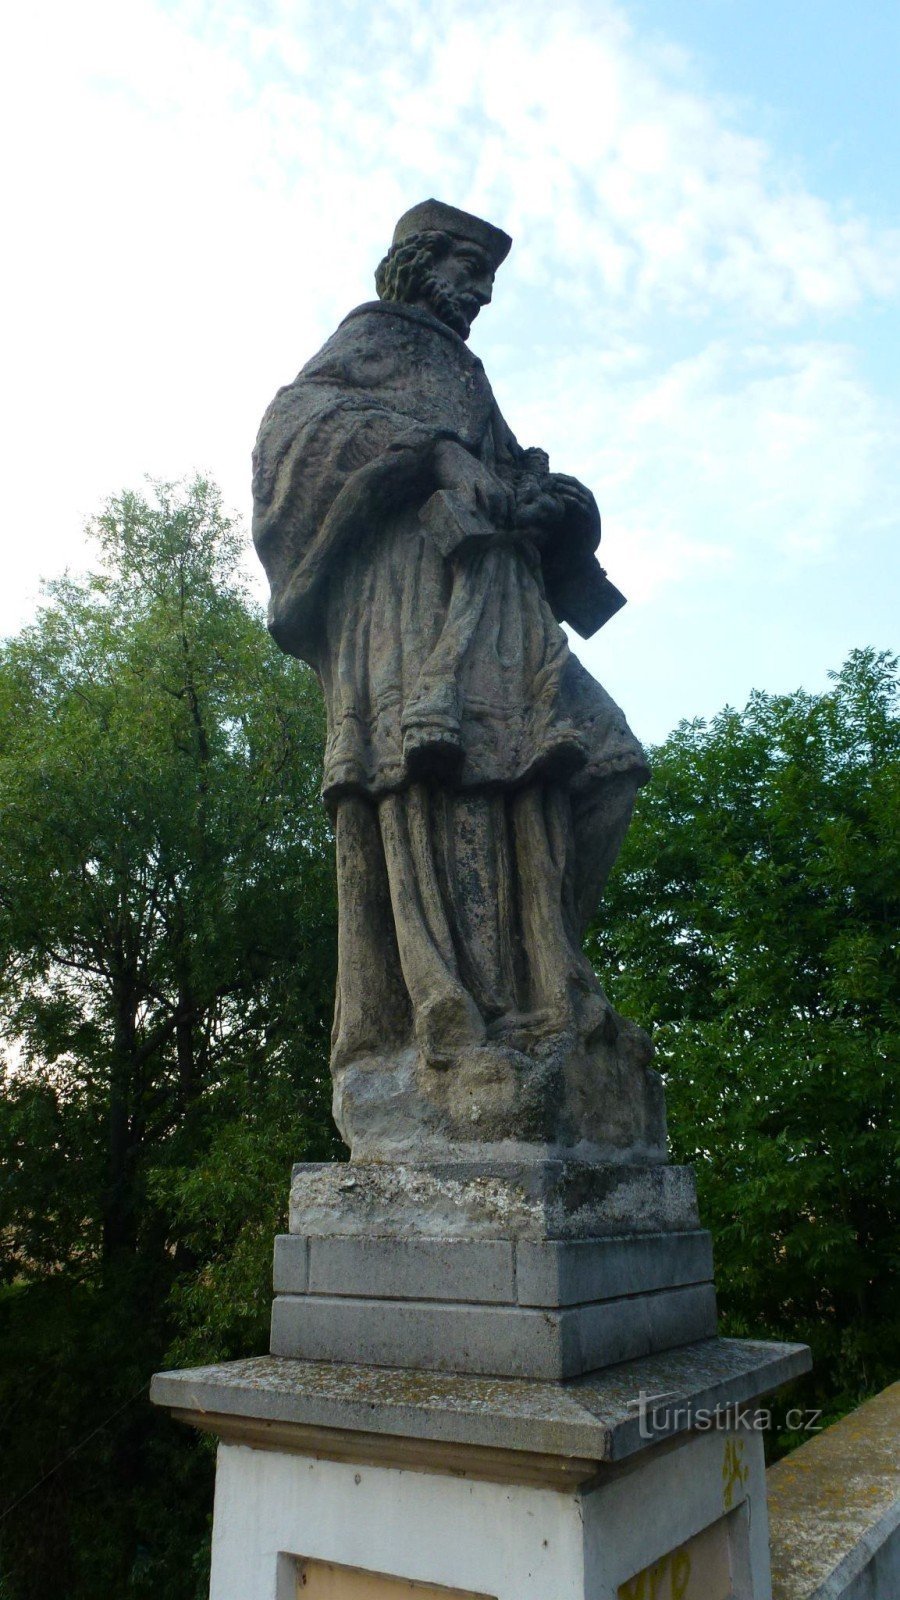 bức tượng của Thánh John of Nepomuk đã được di chuyển đến cây cầu từ cây cầu qua đường lái xe trong nhà máy